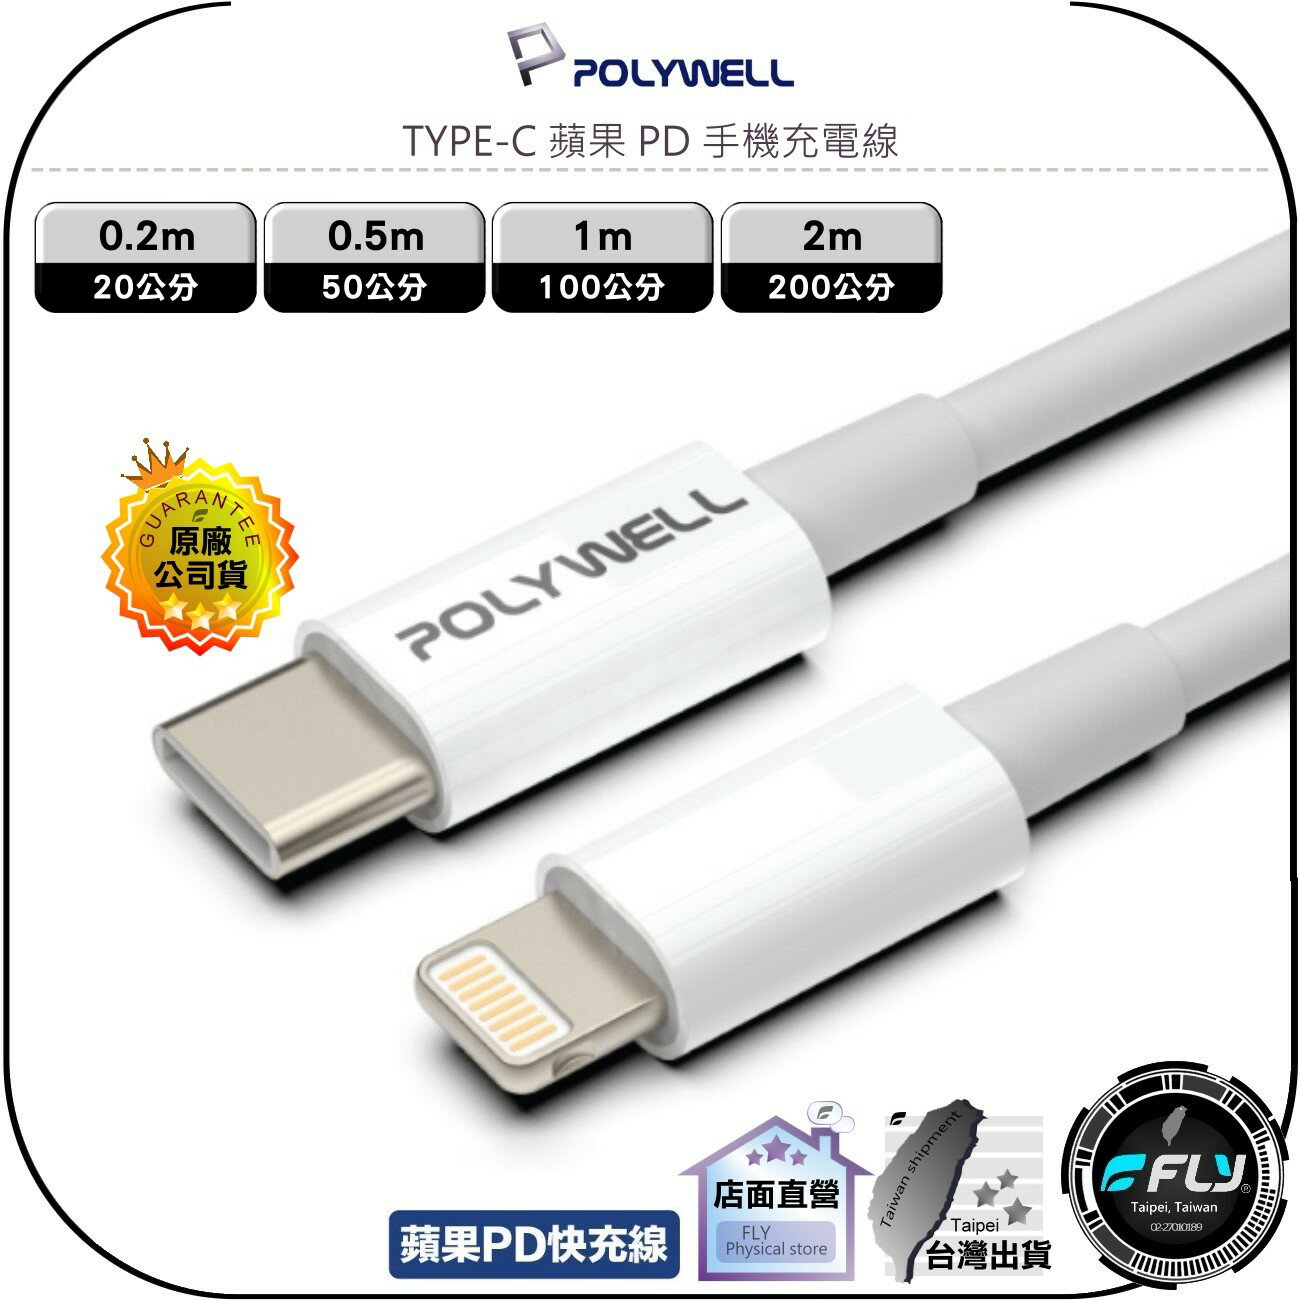 【飛翔商城】POLYWELL 寶利威爾 TYPE-C 蘋果 PD 手機充電線◉公司貨◉0.2m/0.5m/1m/2m